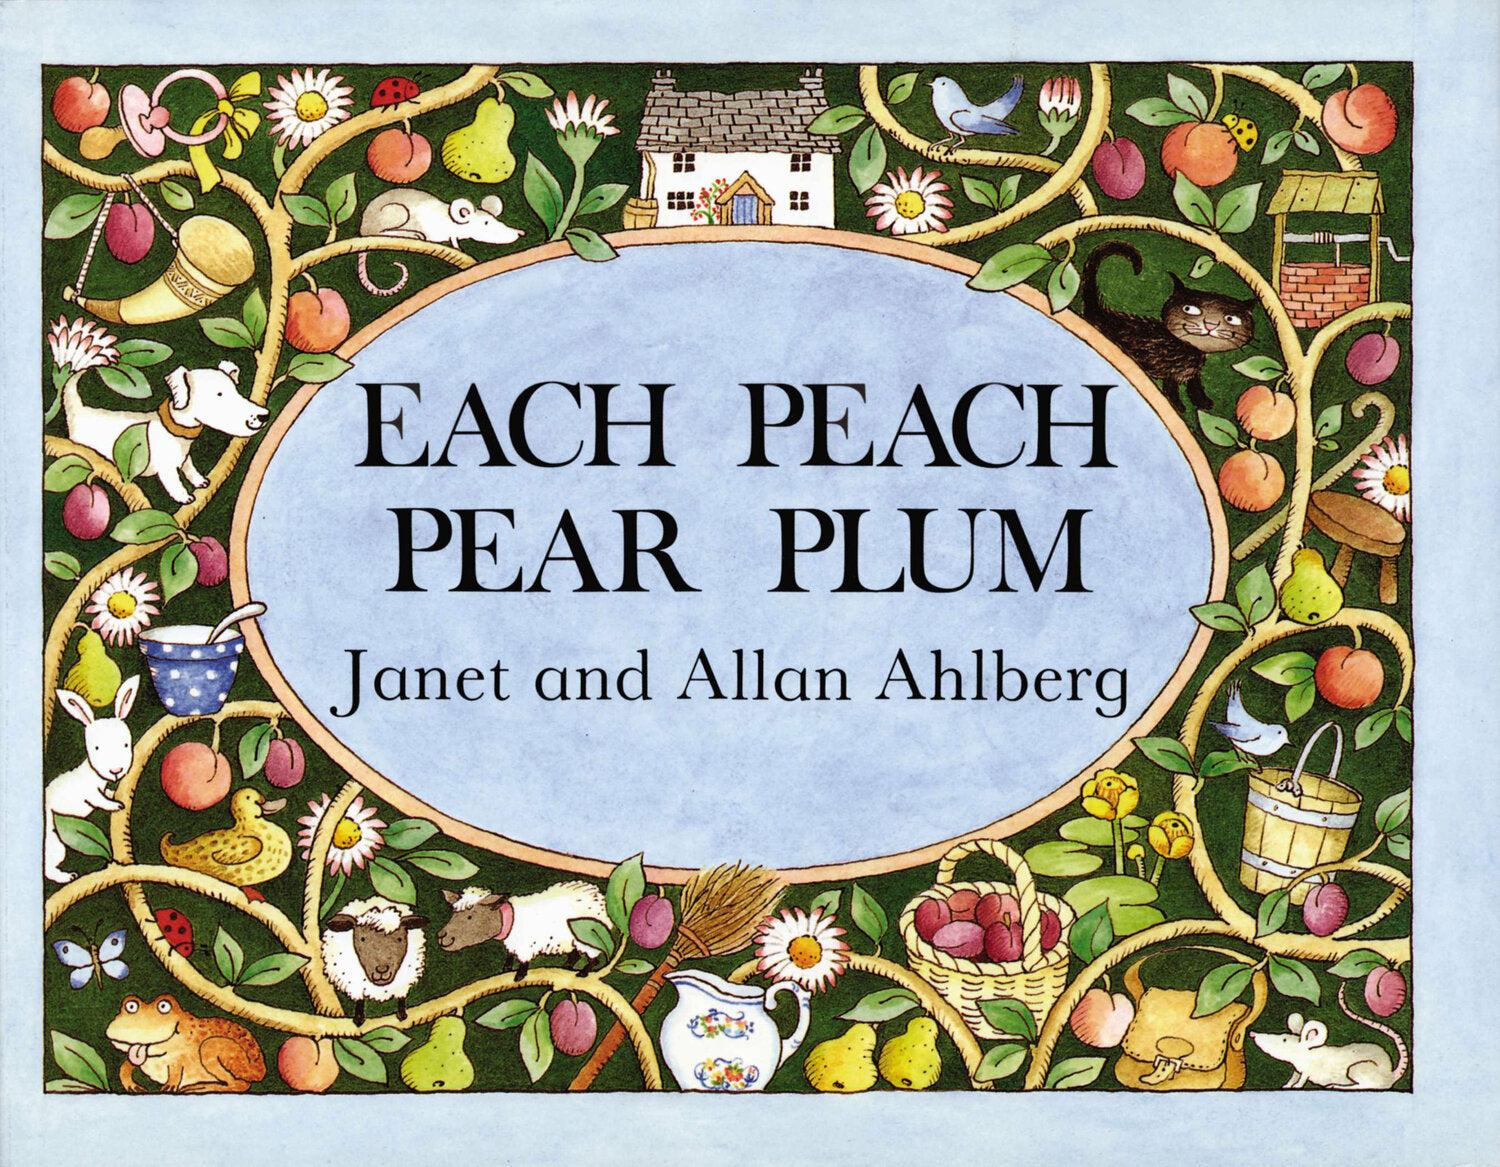 Each Peach Pear Plum Paperback